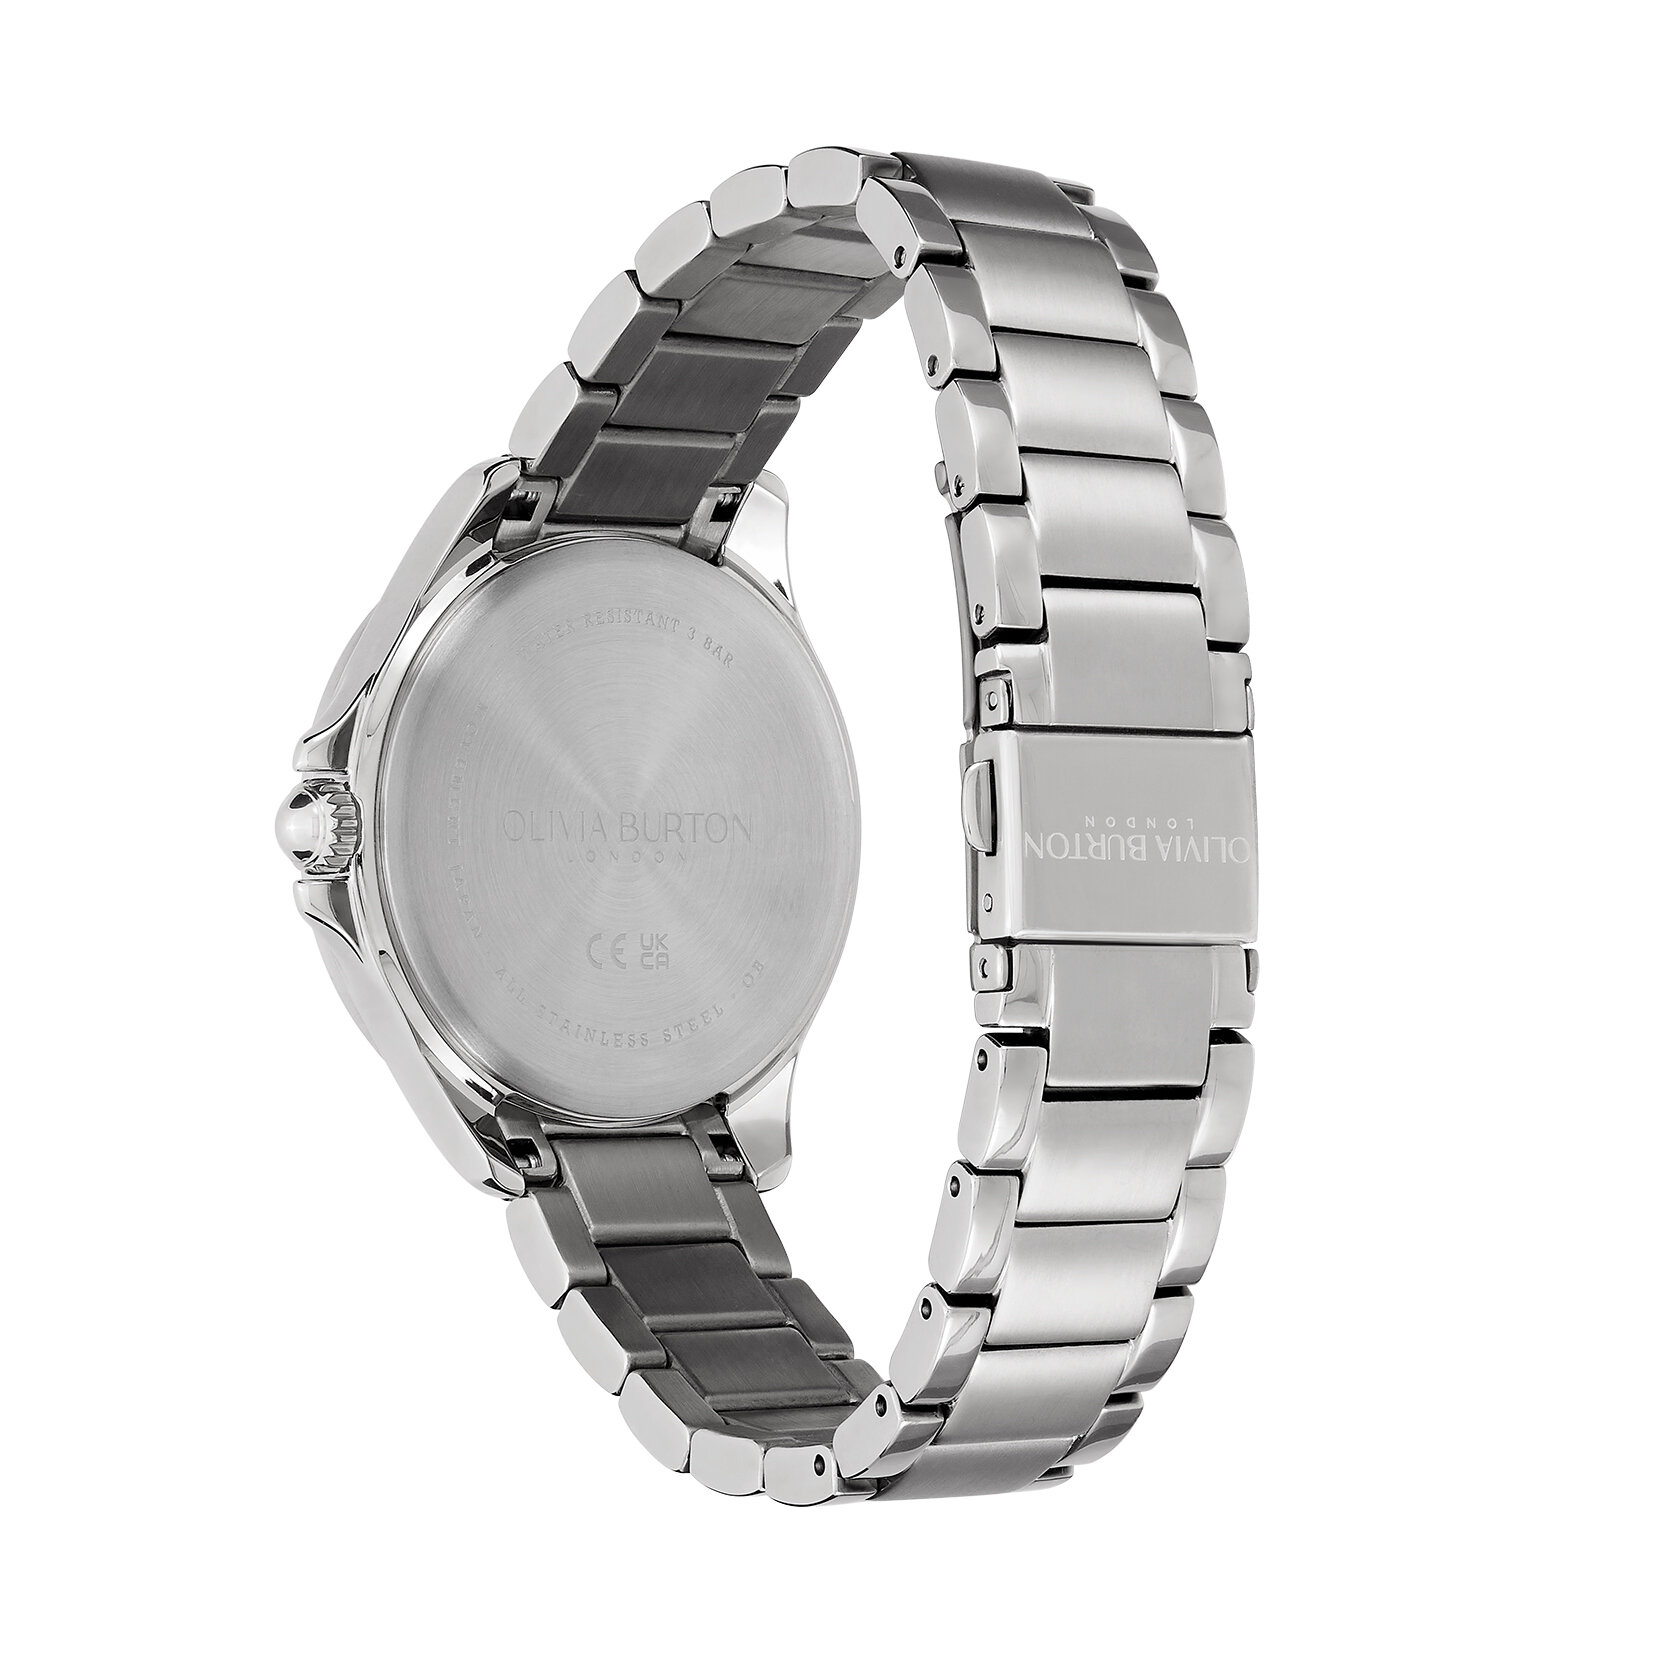 36mm Guilloche Metallic White & Silver Bracelet Watch